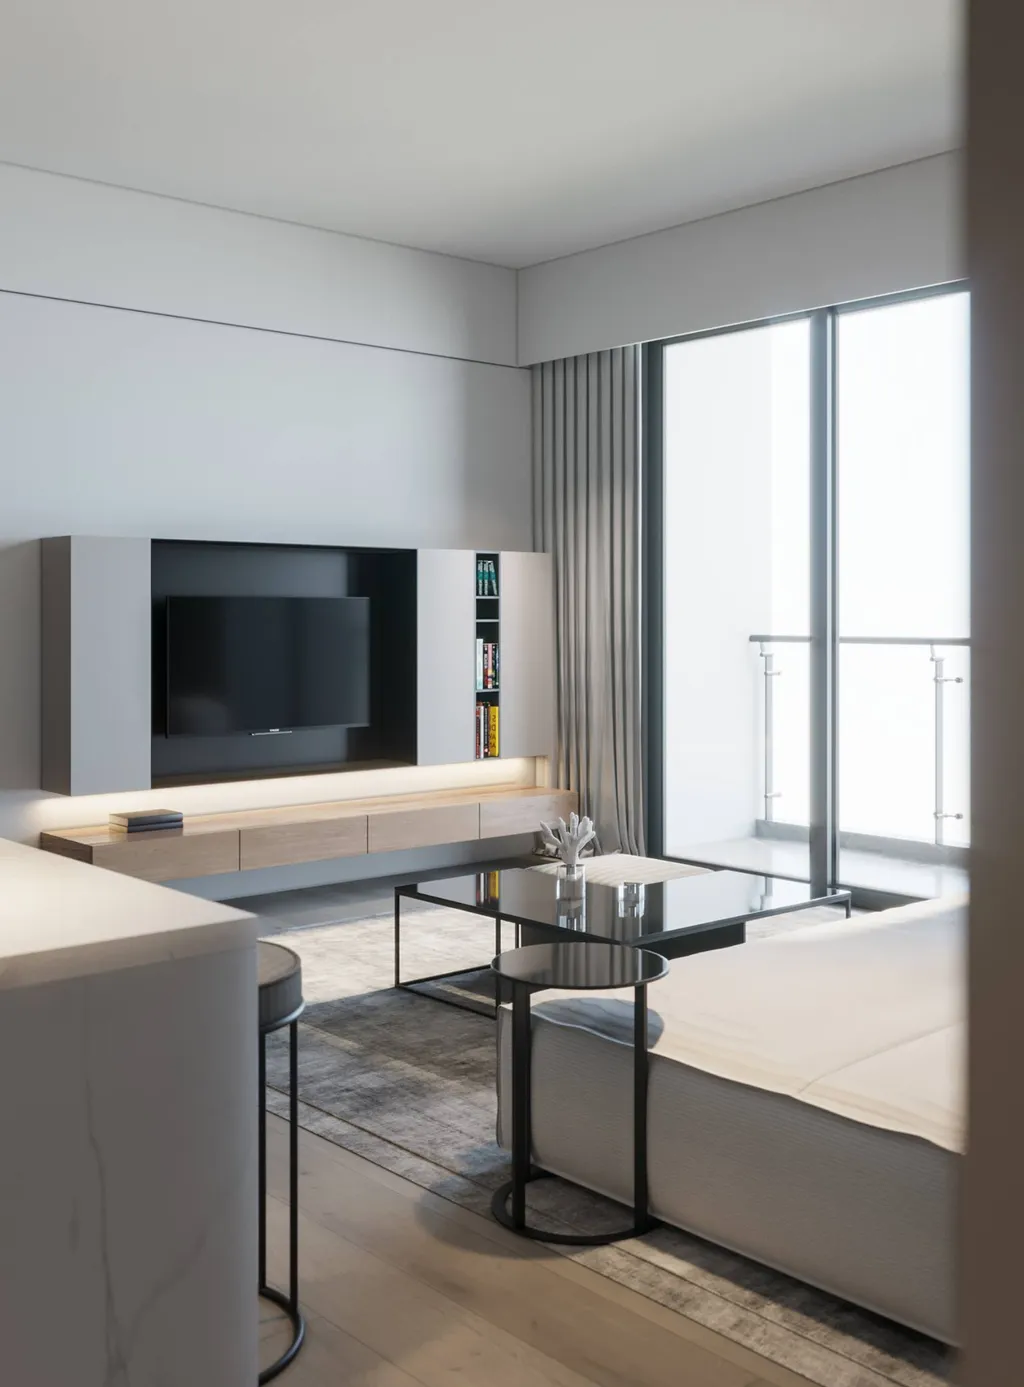 Công trình hoàn thiện nội thất cho phòng khách căn hộ theo phong cách Minimalism